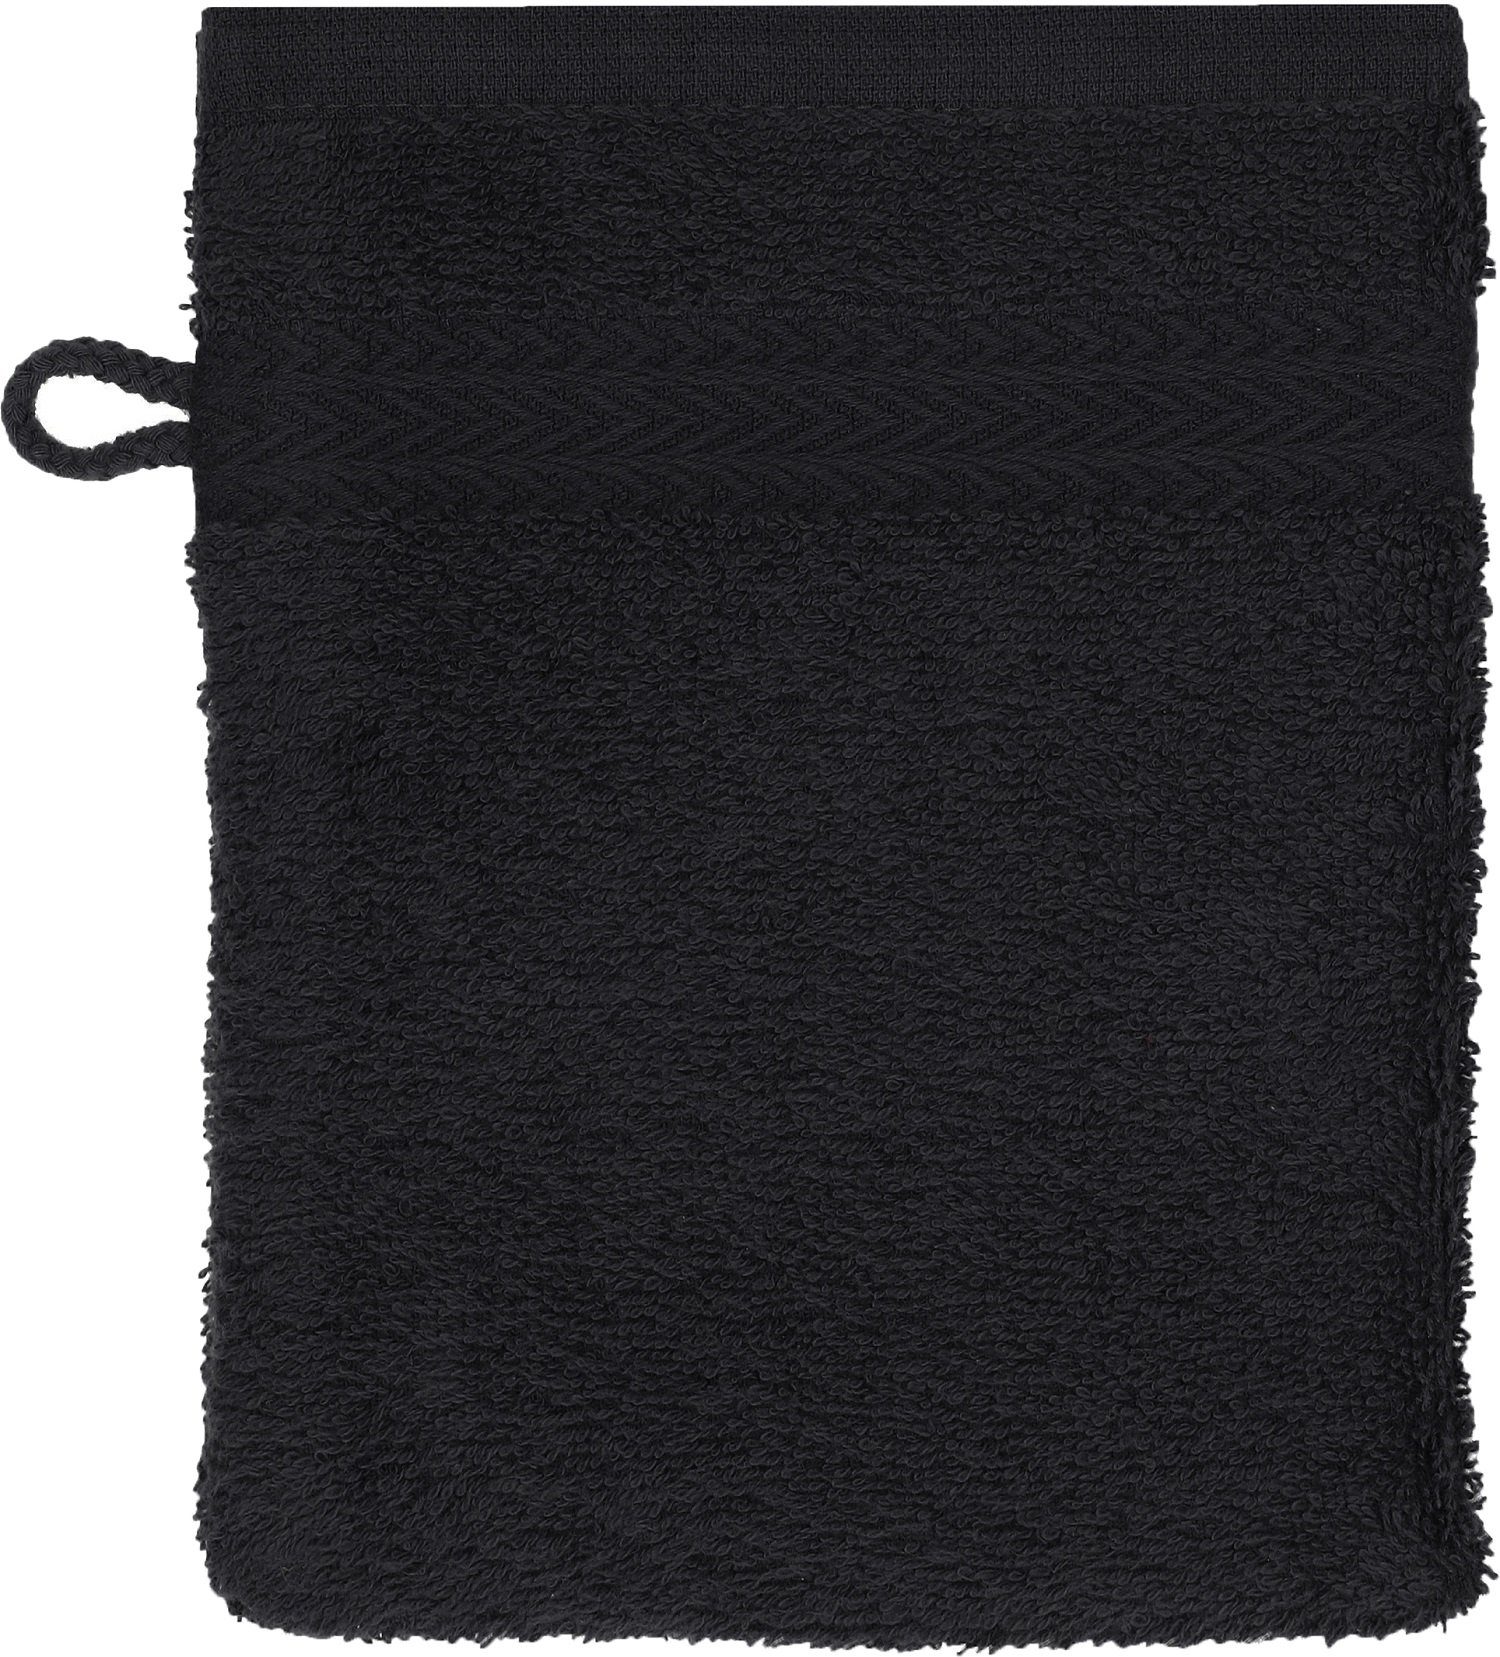 Stück Betz Premium Waschhandschuh Set schwarz 100% Waschlappen Baumwolle 16x21 Waschhandschuhe und cm apfelgrün Farbe 10